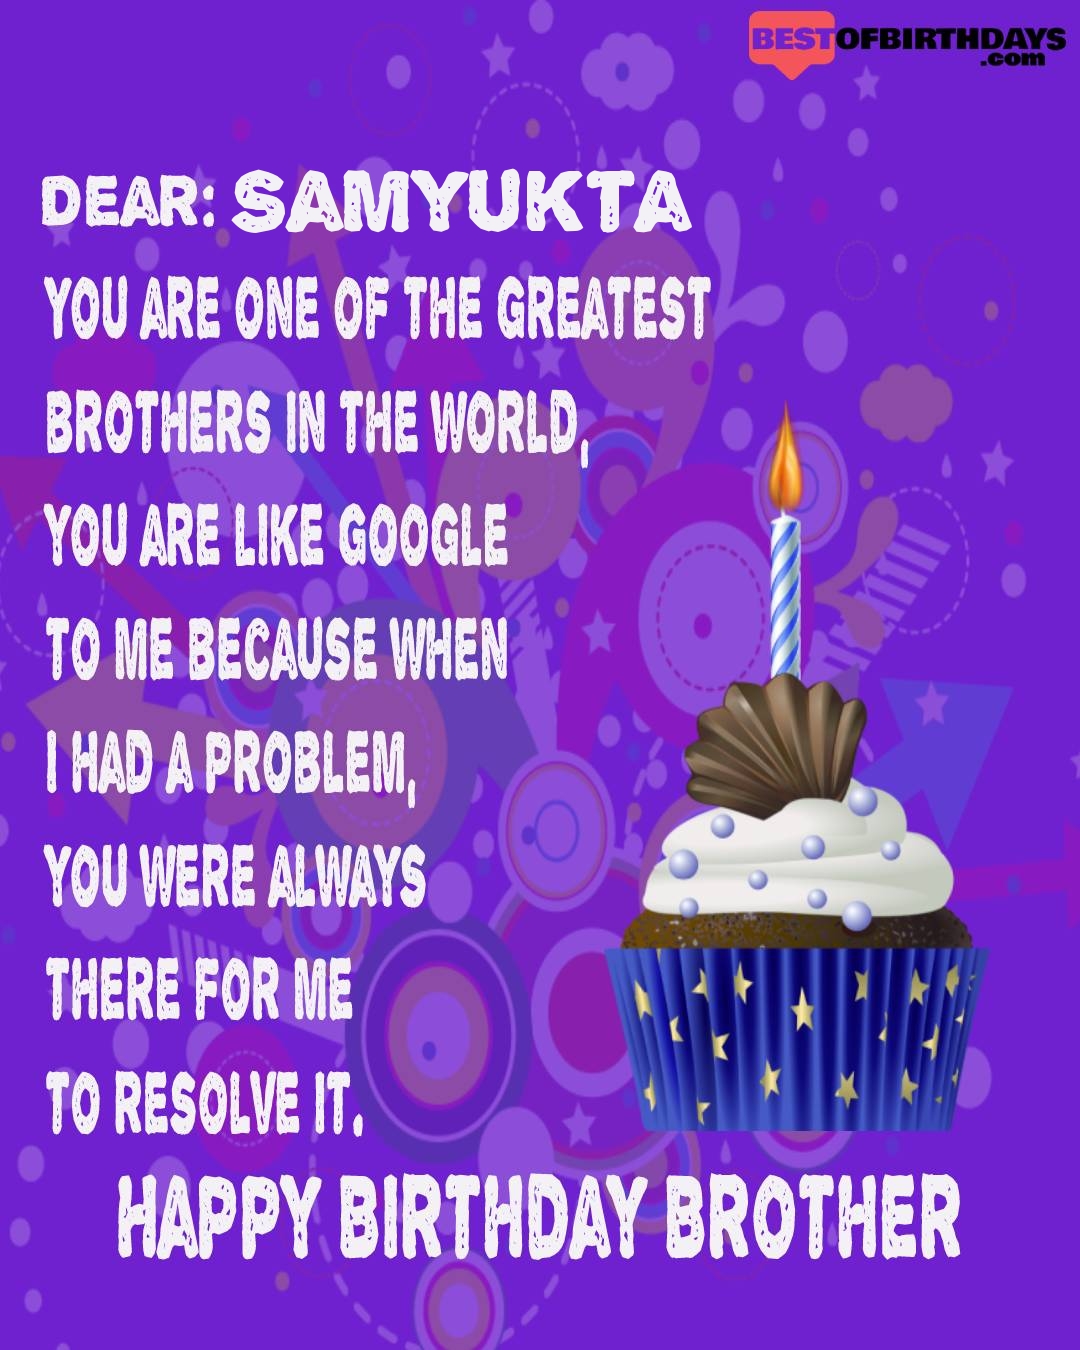 Happy birthday samyukta bhai brother bro